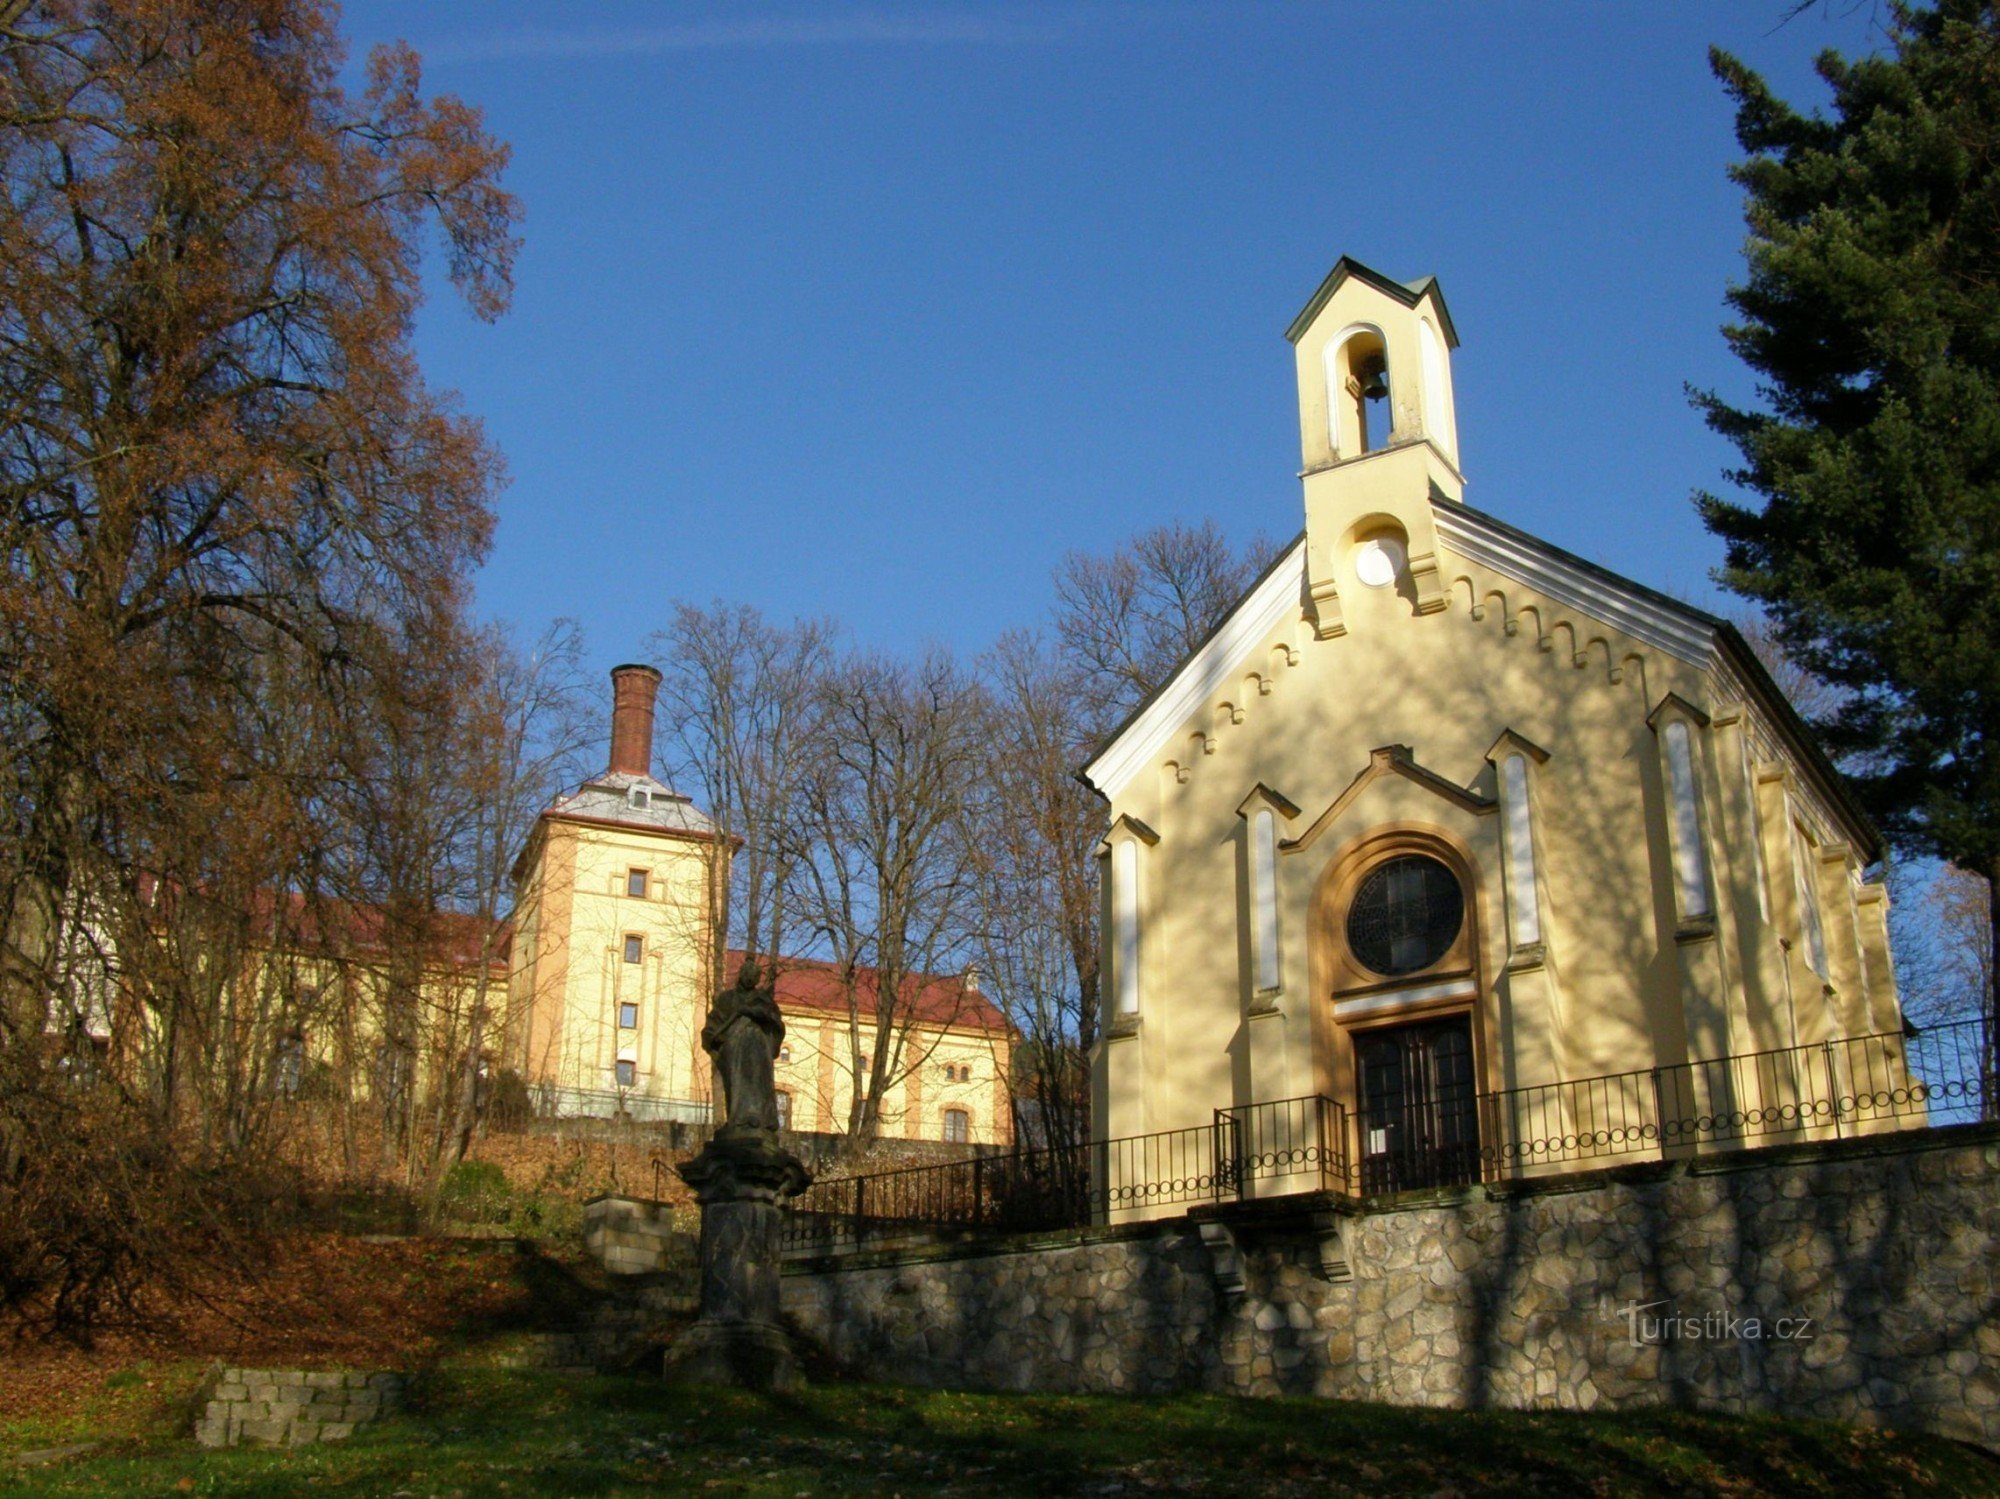 chapel of St. Vavřince in Mala Skála